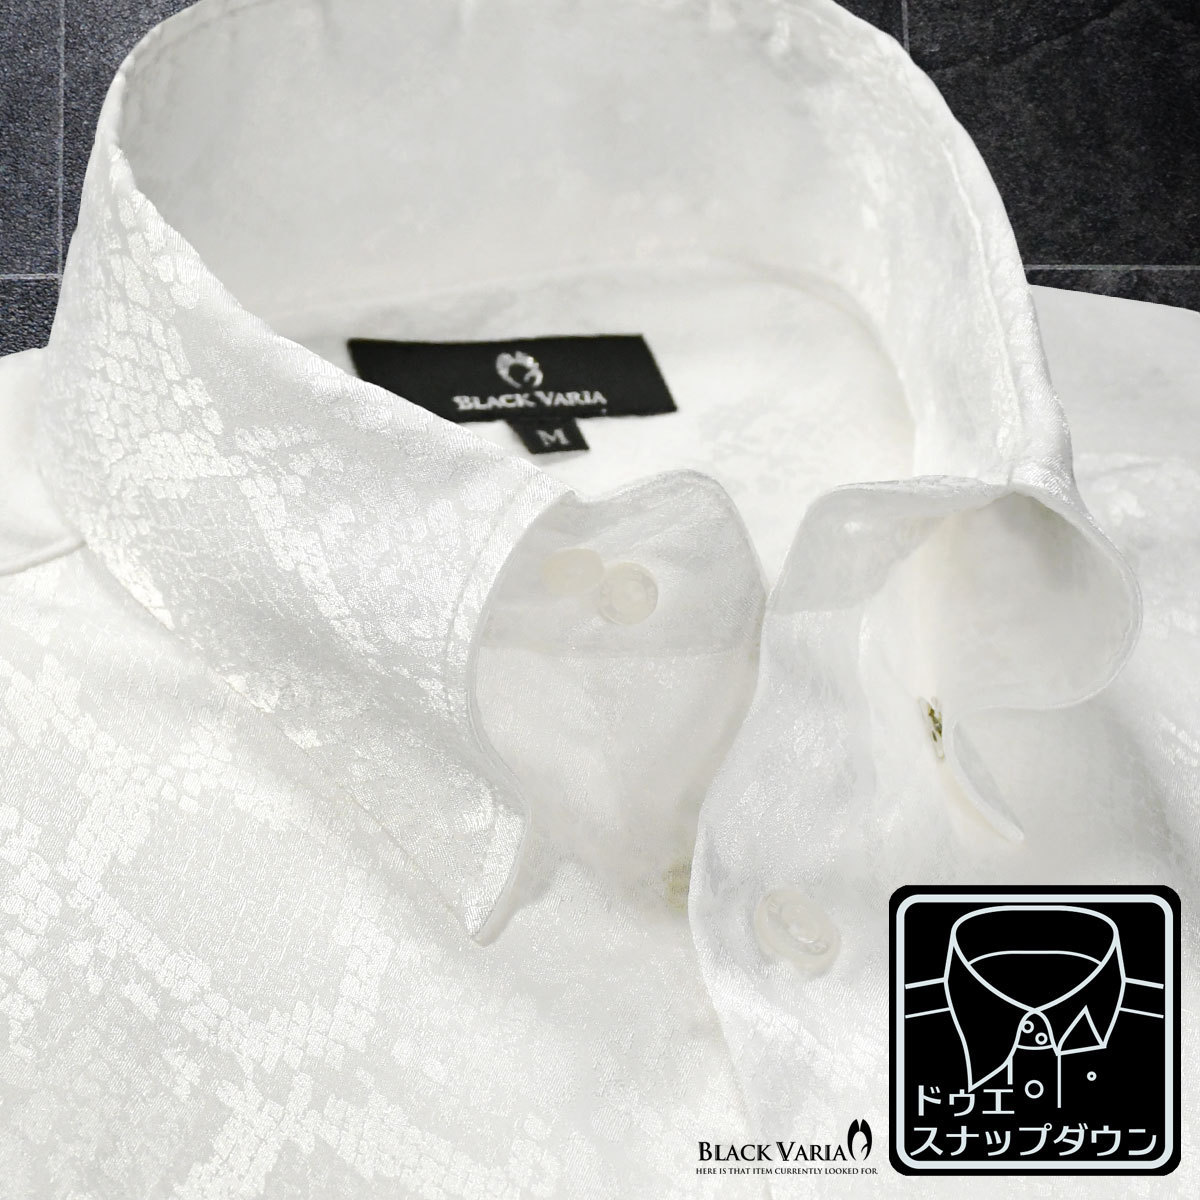 181711-wh ブラックバリア ドゥエボットーニ パイソン蛇柄 ジャガード スナップダウン ドレスシャツ メンズ(ホワイト白) L ステージ衣装_スナップダウン